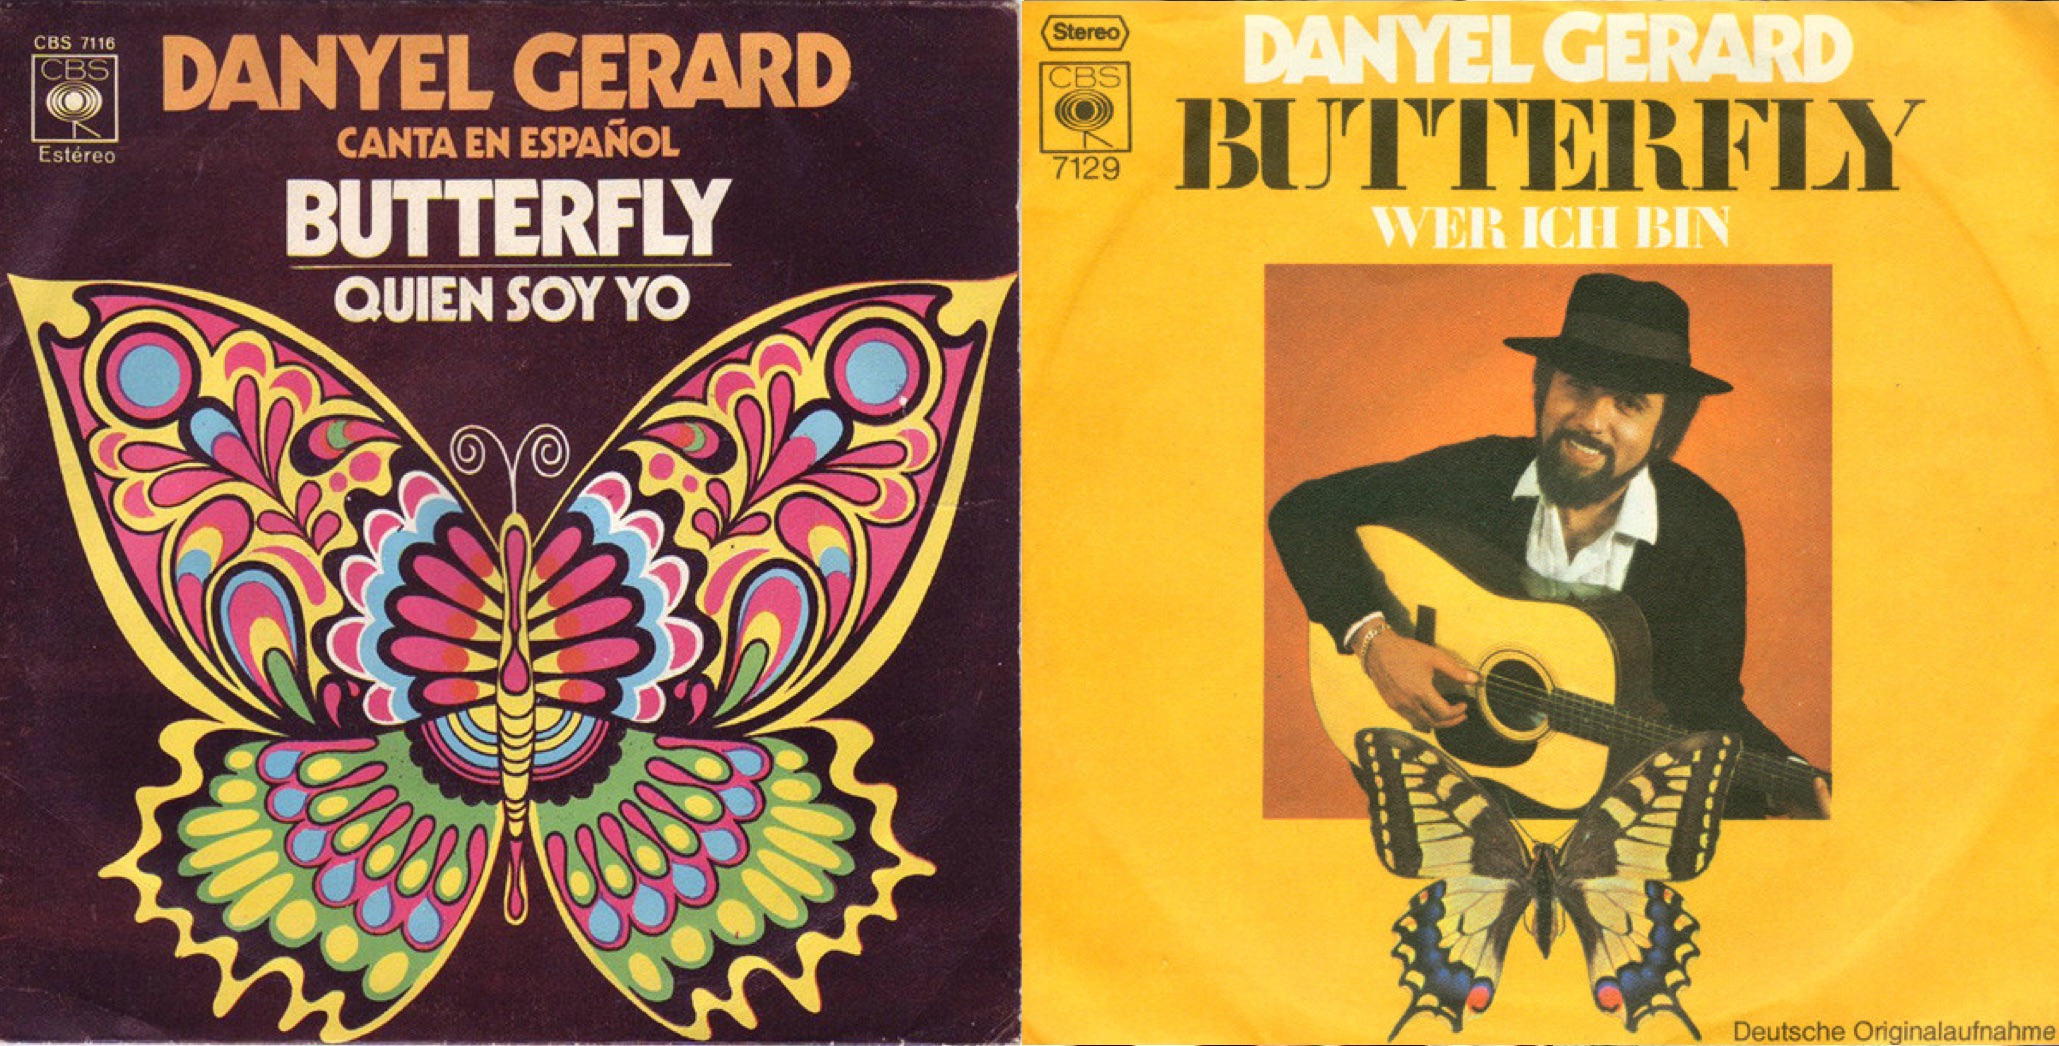 Discos sencillos de "Butterfly" en español y alemán.